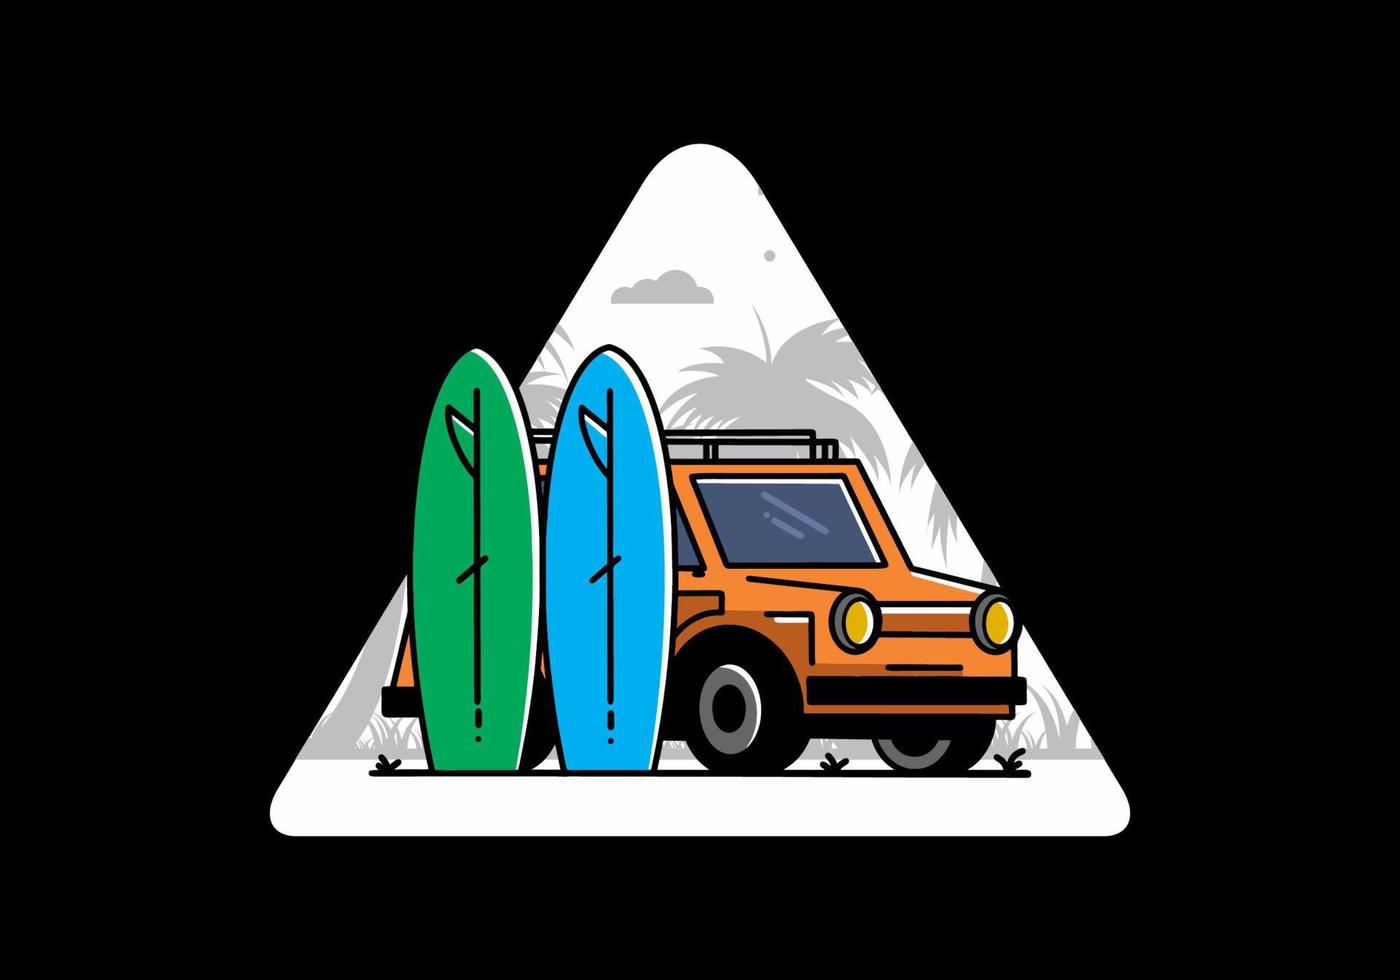 ilustração de carro pequeno e duas pranchas de surf vetor